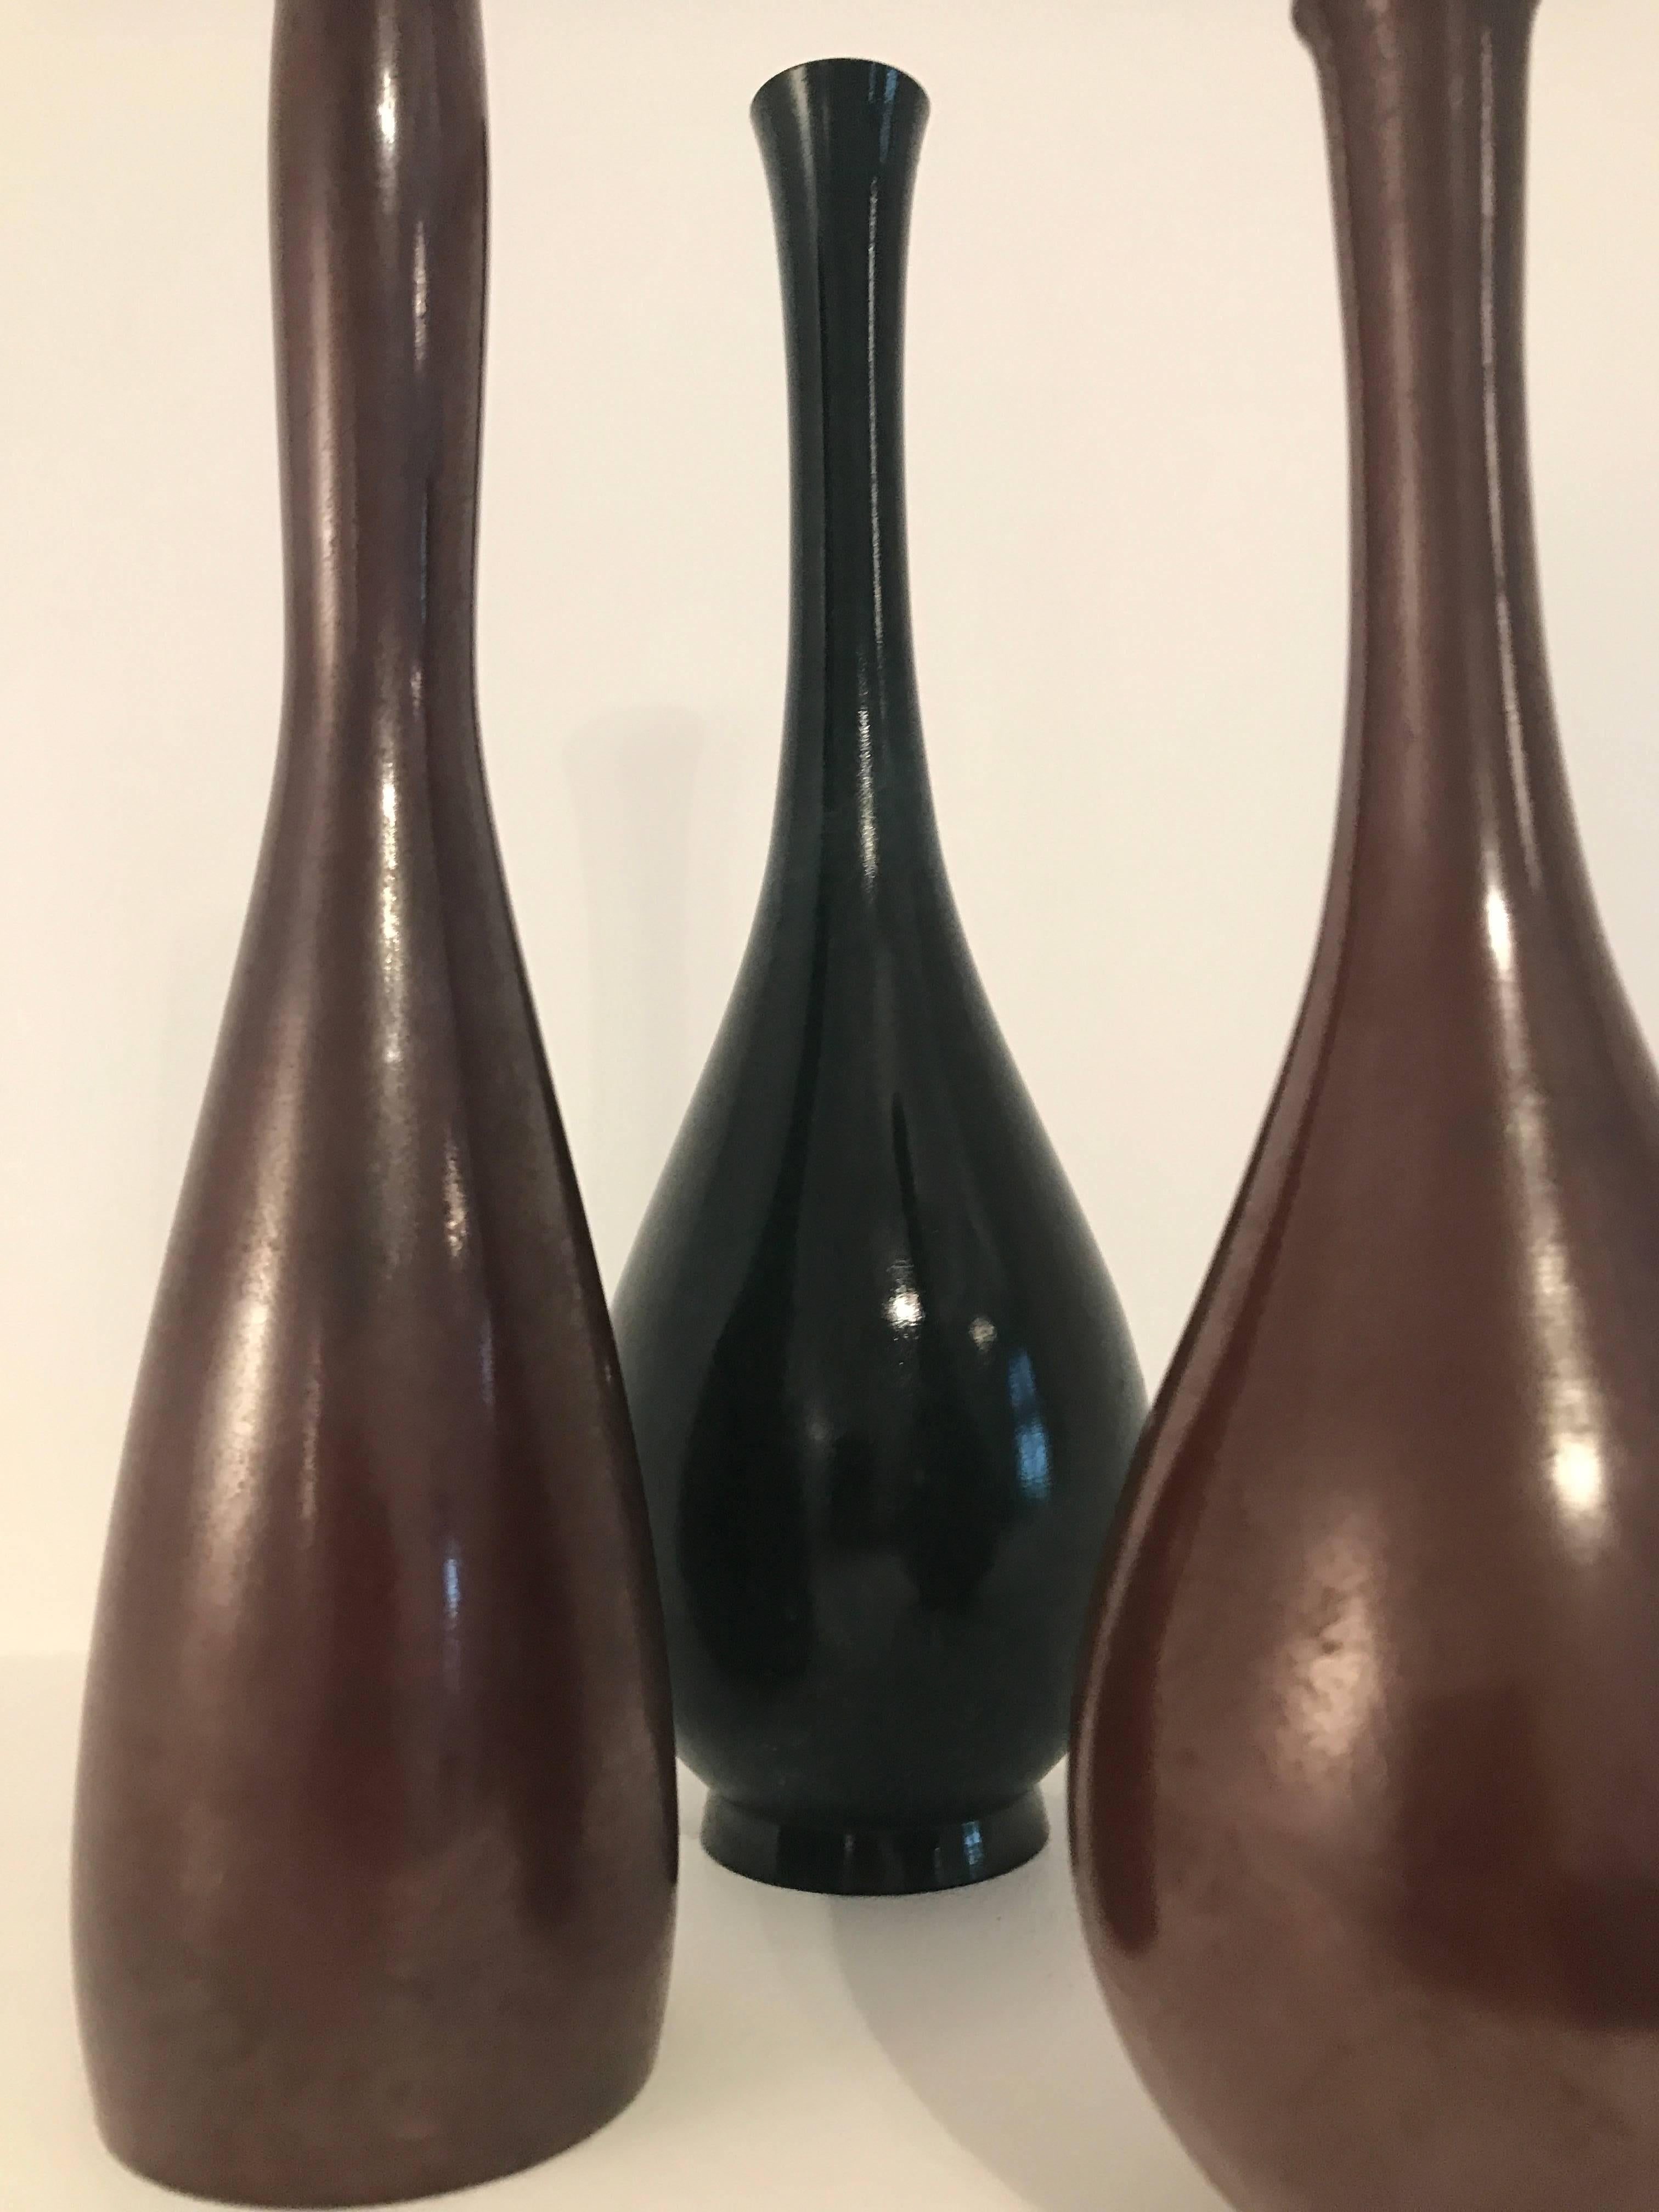 Ensemble de trois vases japonais en bronze.
Mesures : 
hauteur 27 cm diamètre 9 cm
hauteur 27 cm diamètre 7 cm
hauteur 21 cm diamètre 7 cm.
 